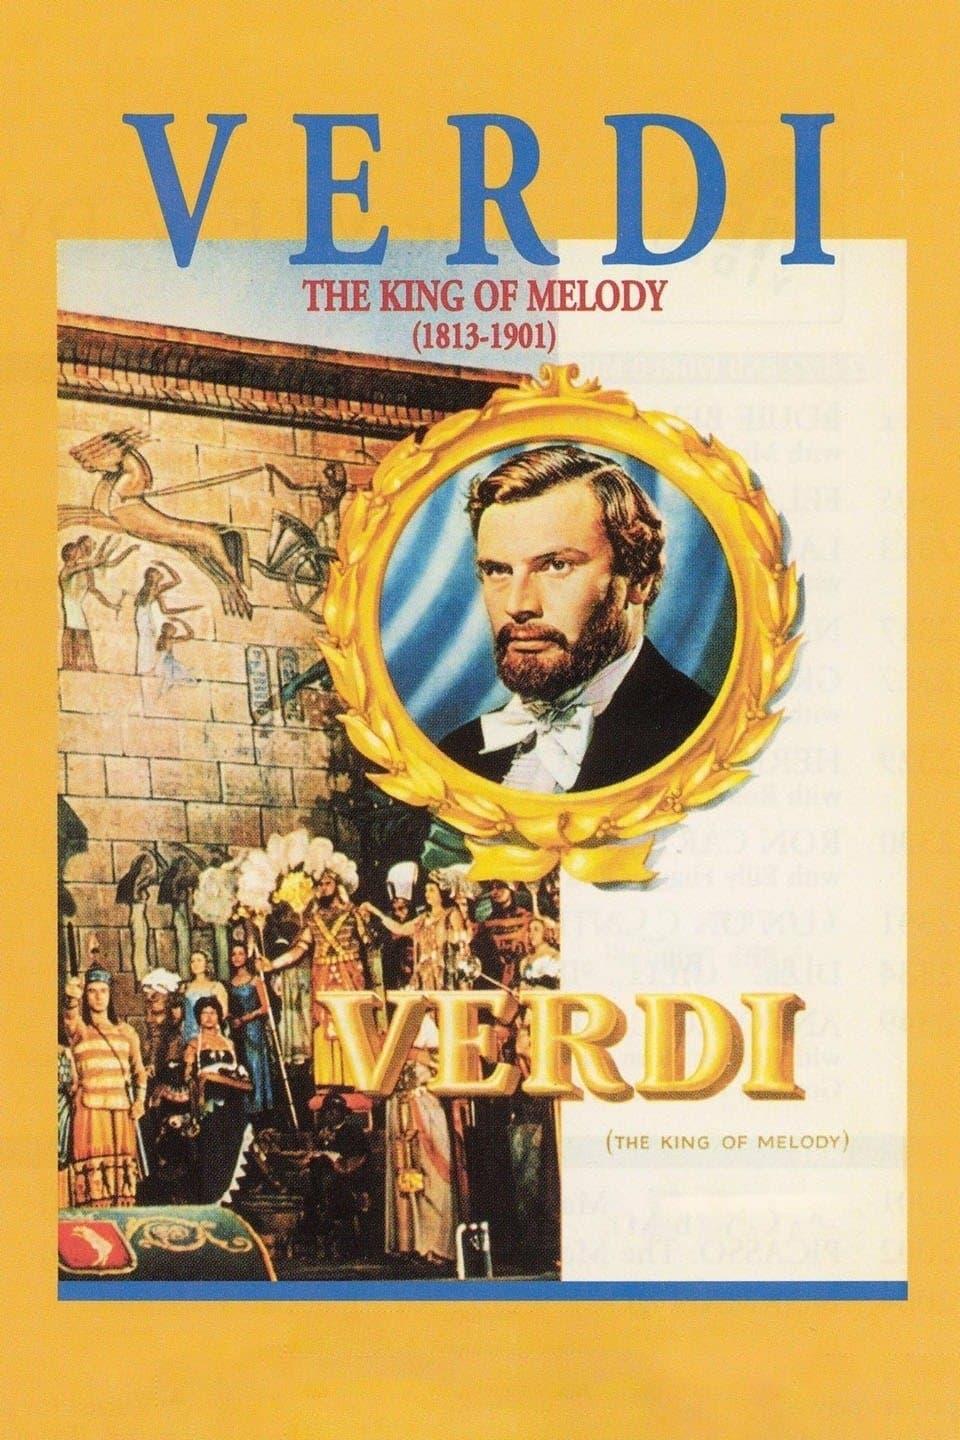 Giuseppe Verdi poster